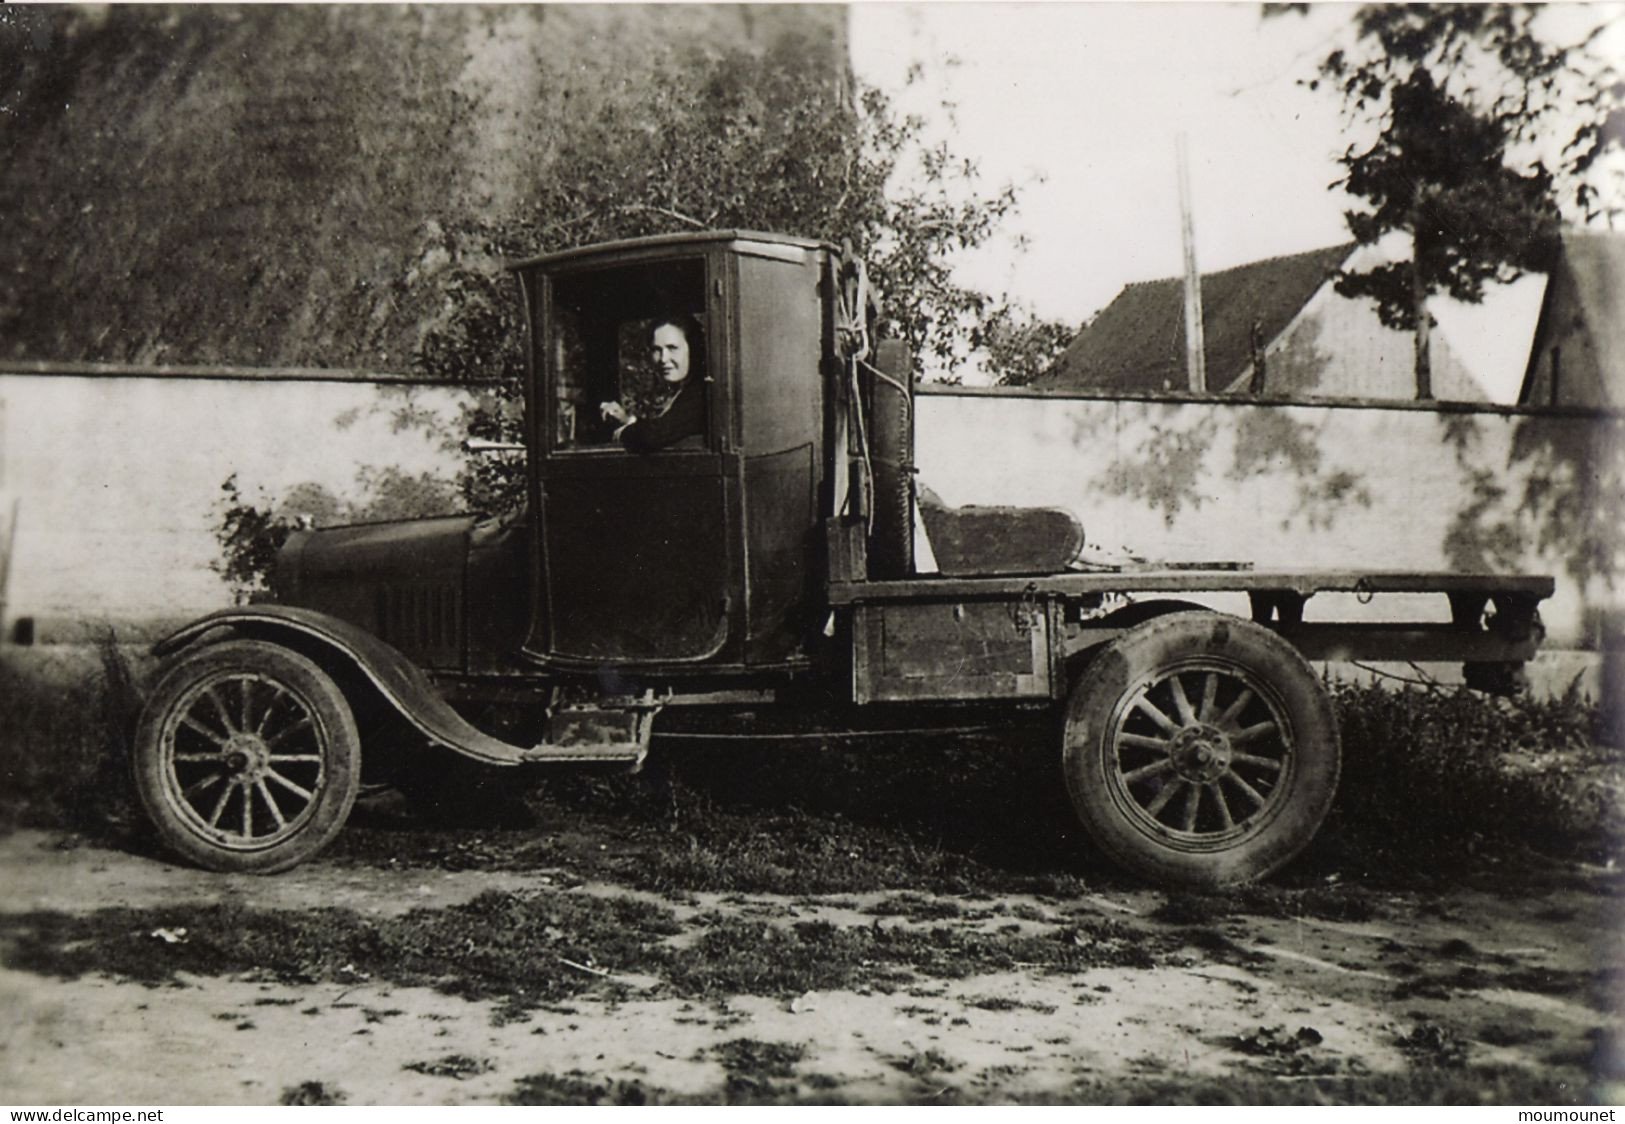 Saint-Rémy-sur-Avre. Automobile 1930 - 1940. Reproduction En 2003 - Europa